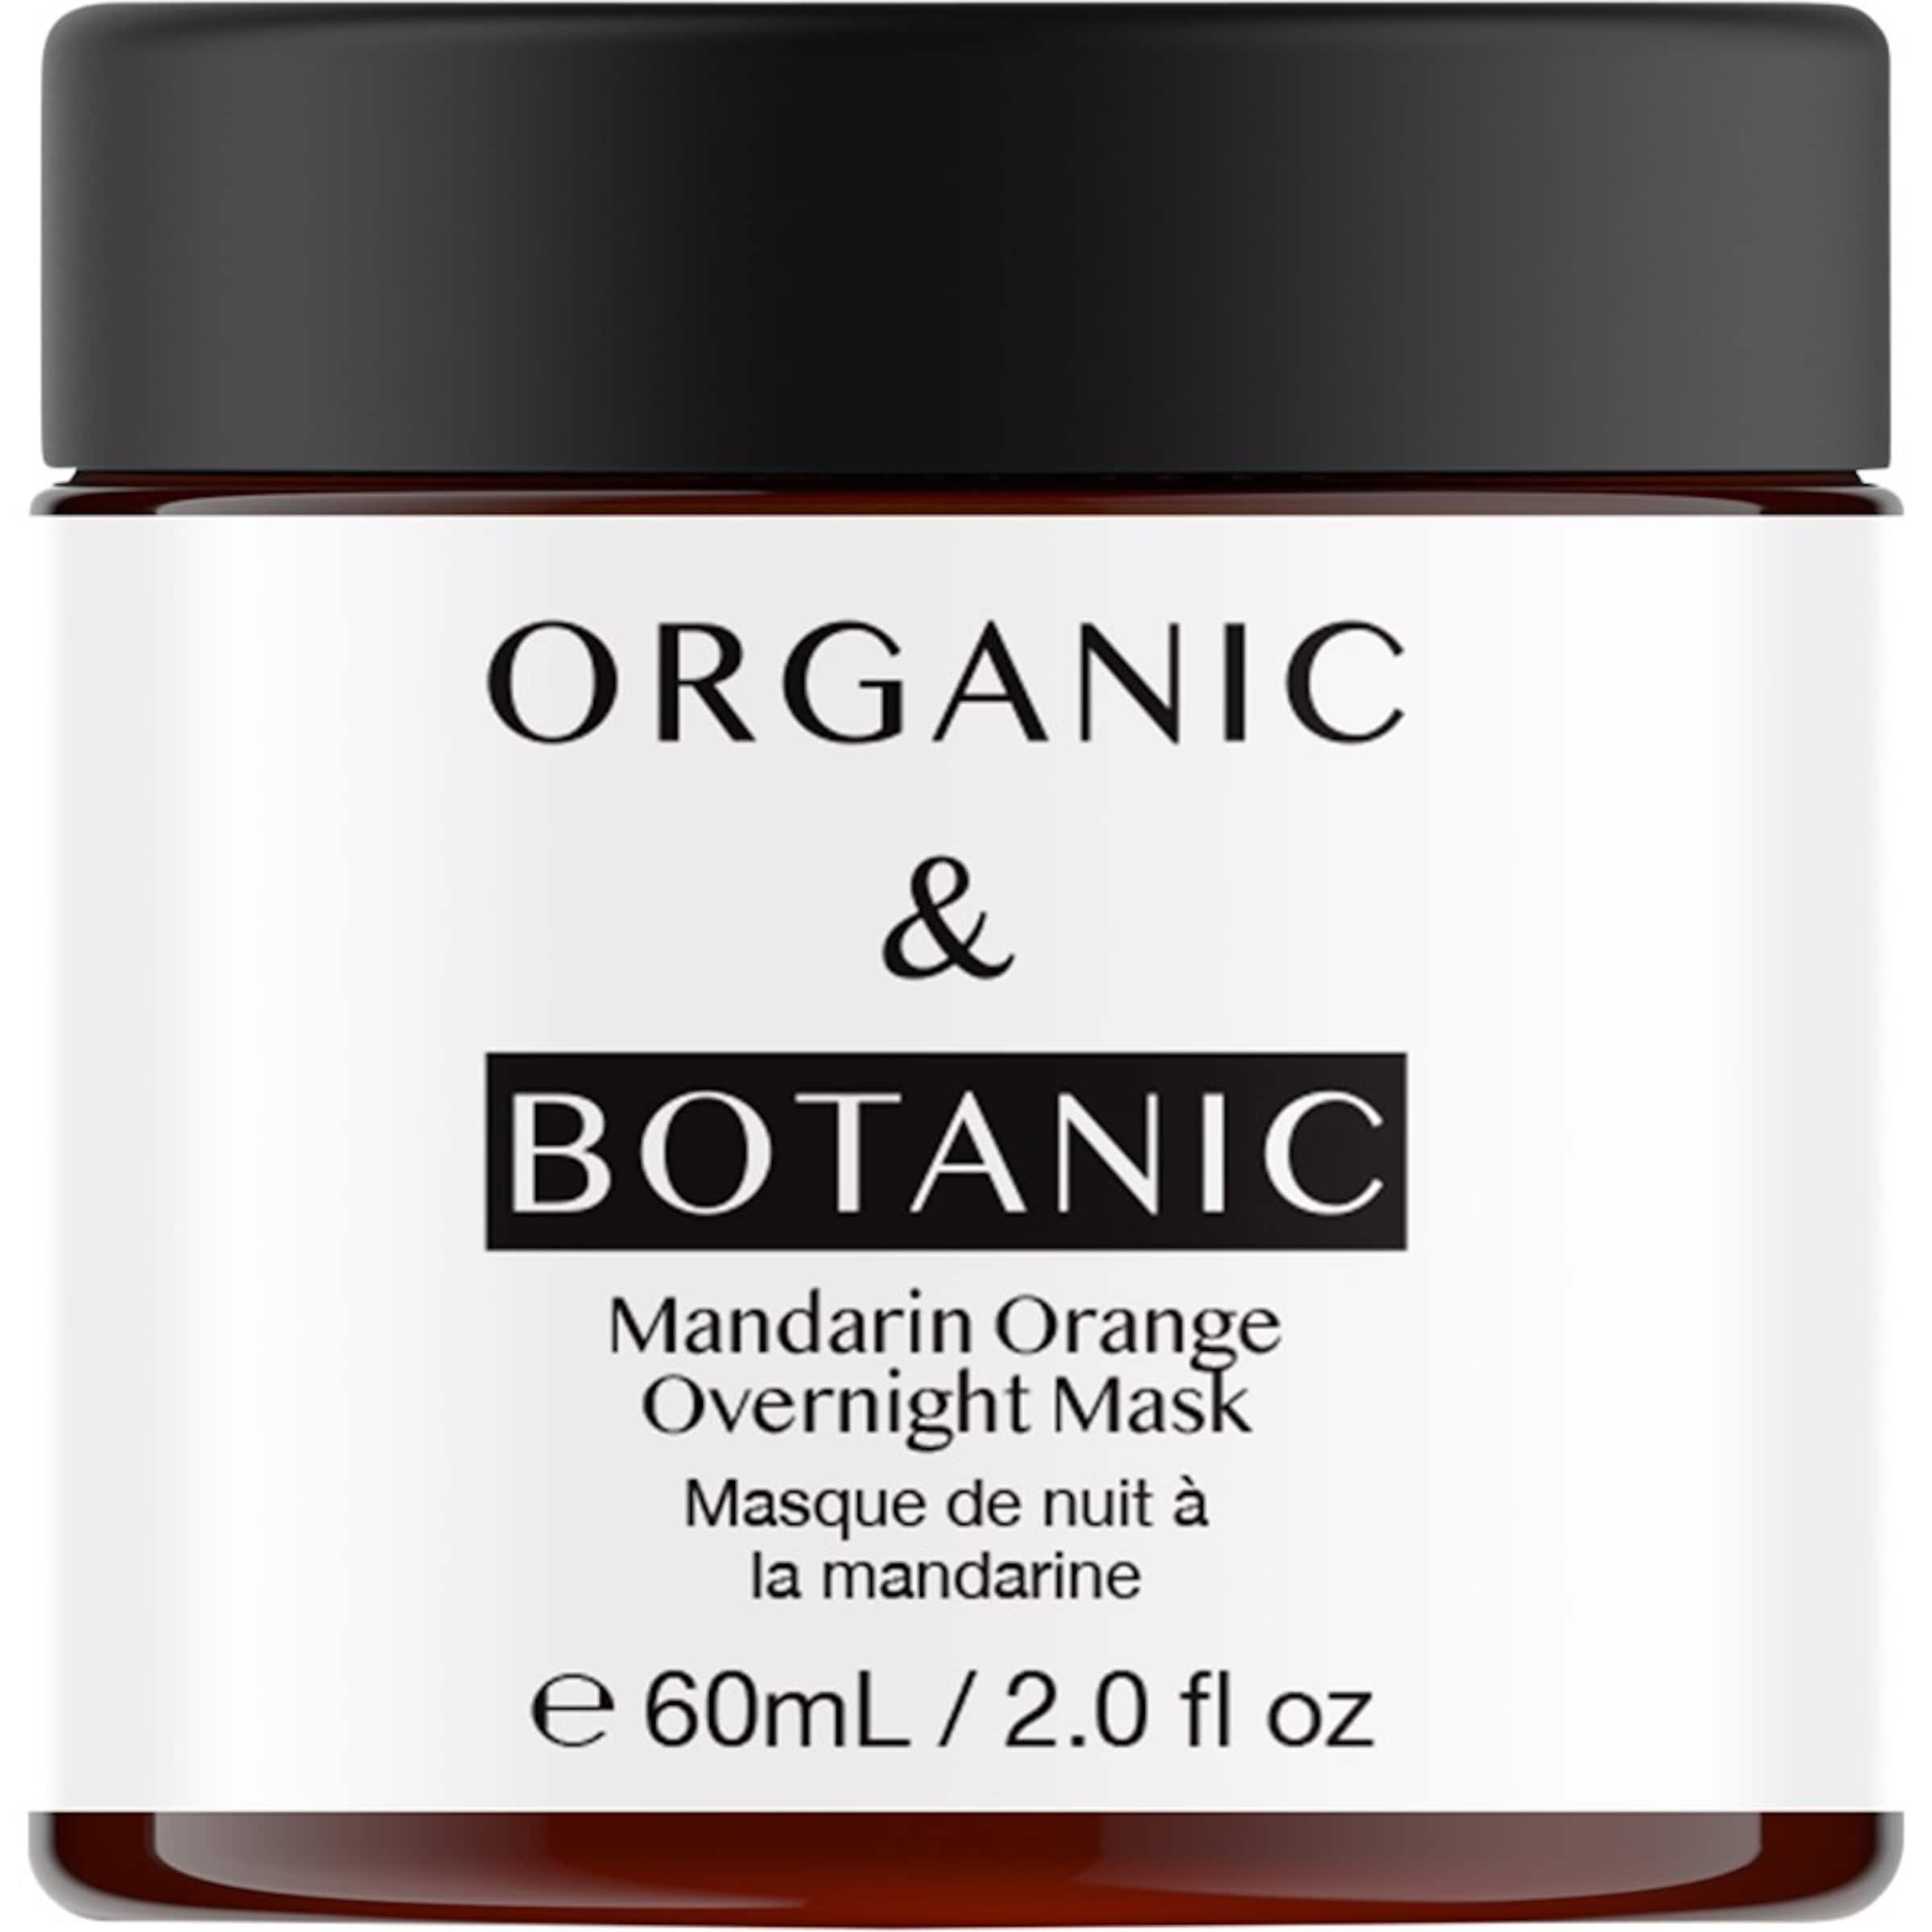 Organic & Botanic Maske in 